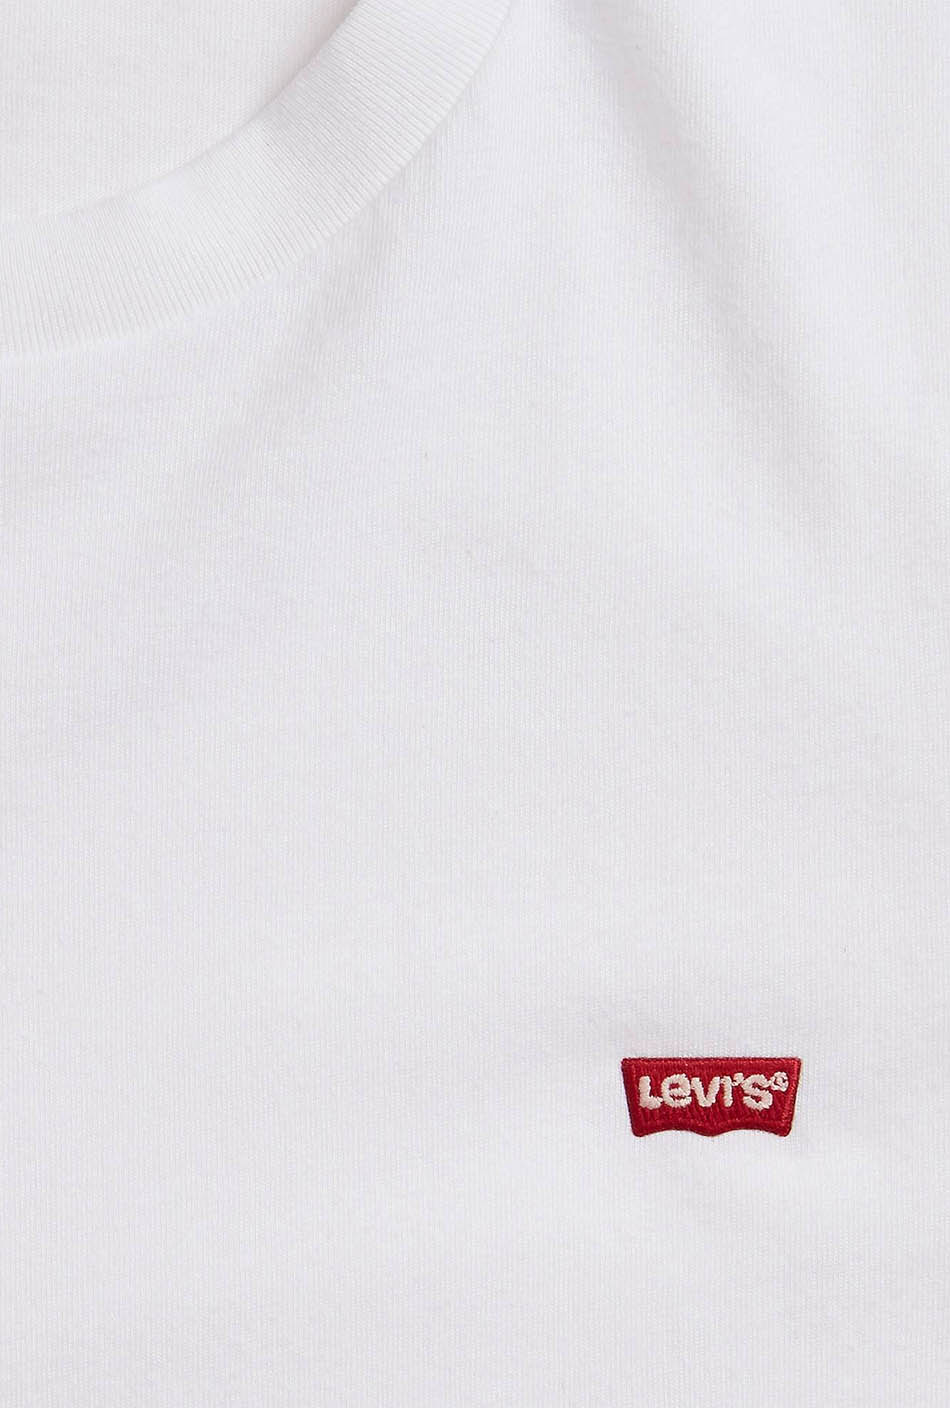 Camiseta Levi's Original Patch White